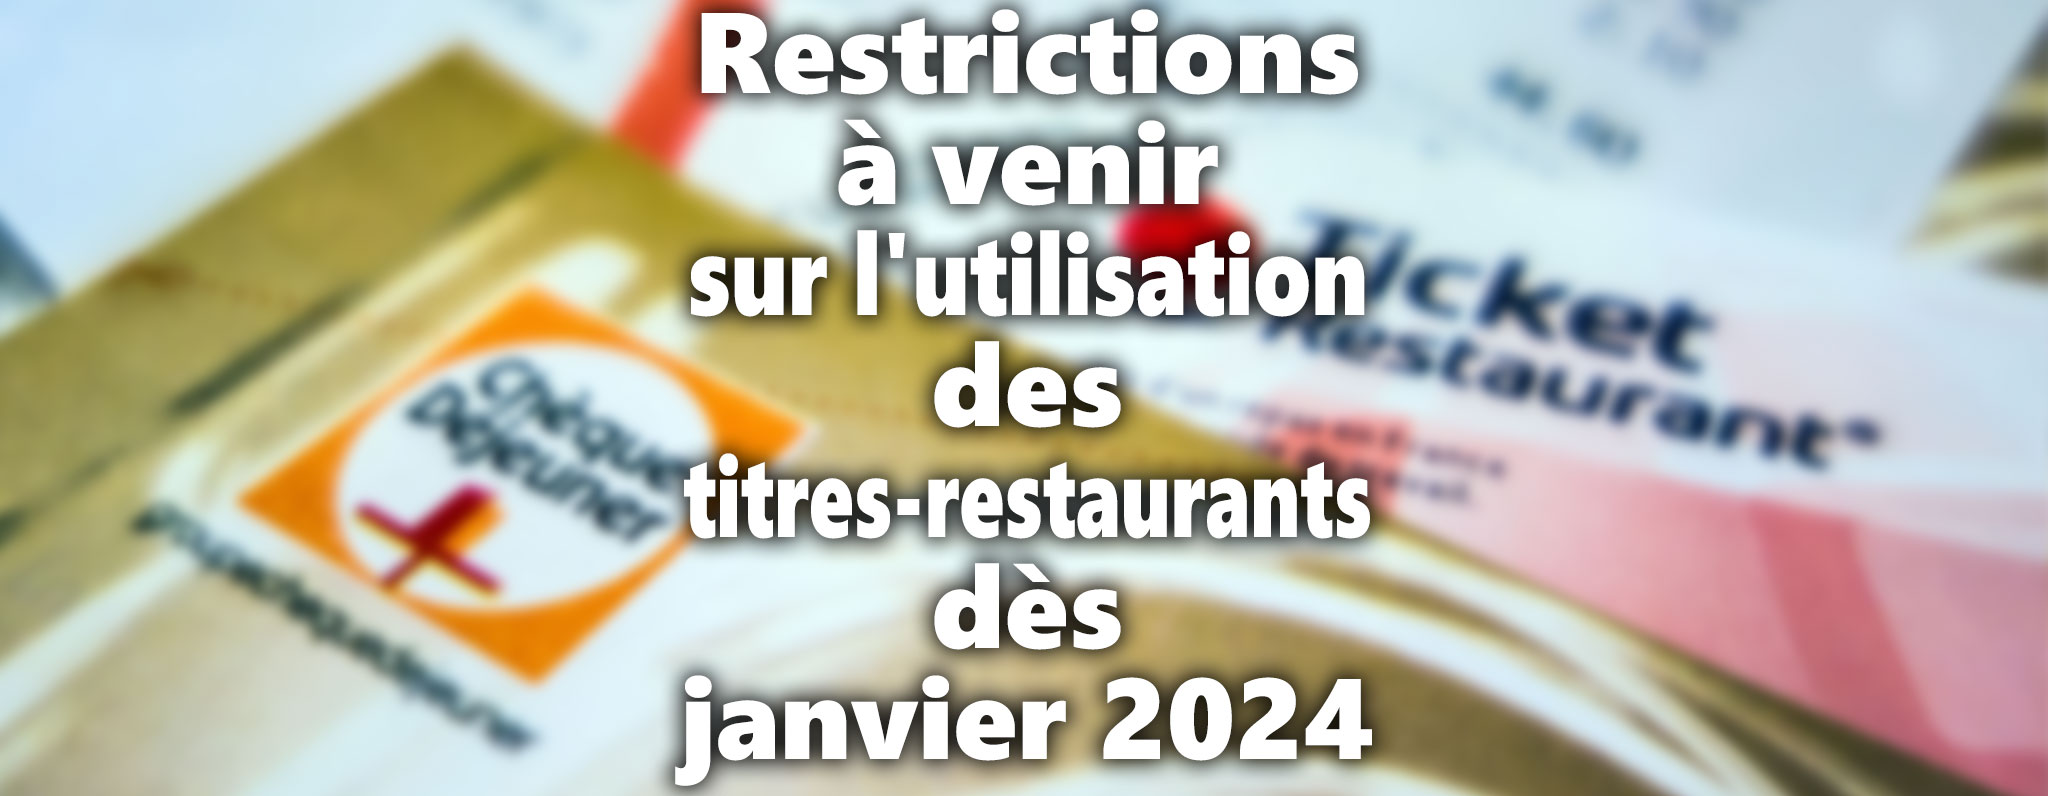 Restrictions à venir sur l'utilisation des titres-restaurants dès janvier 2024 - Mis à jour